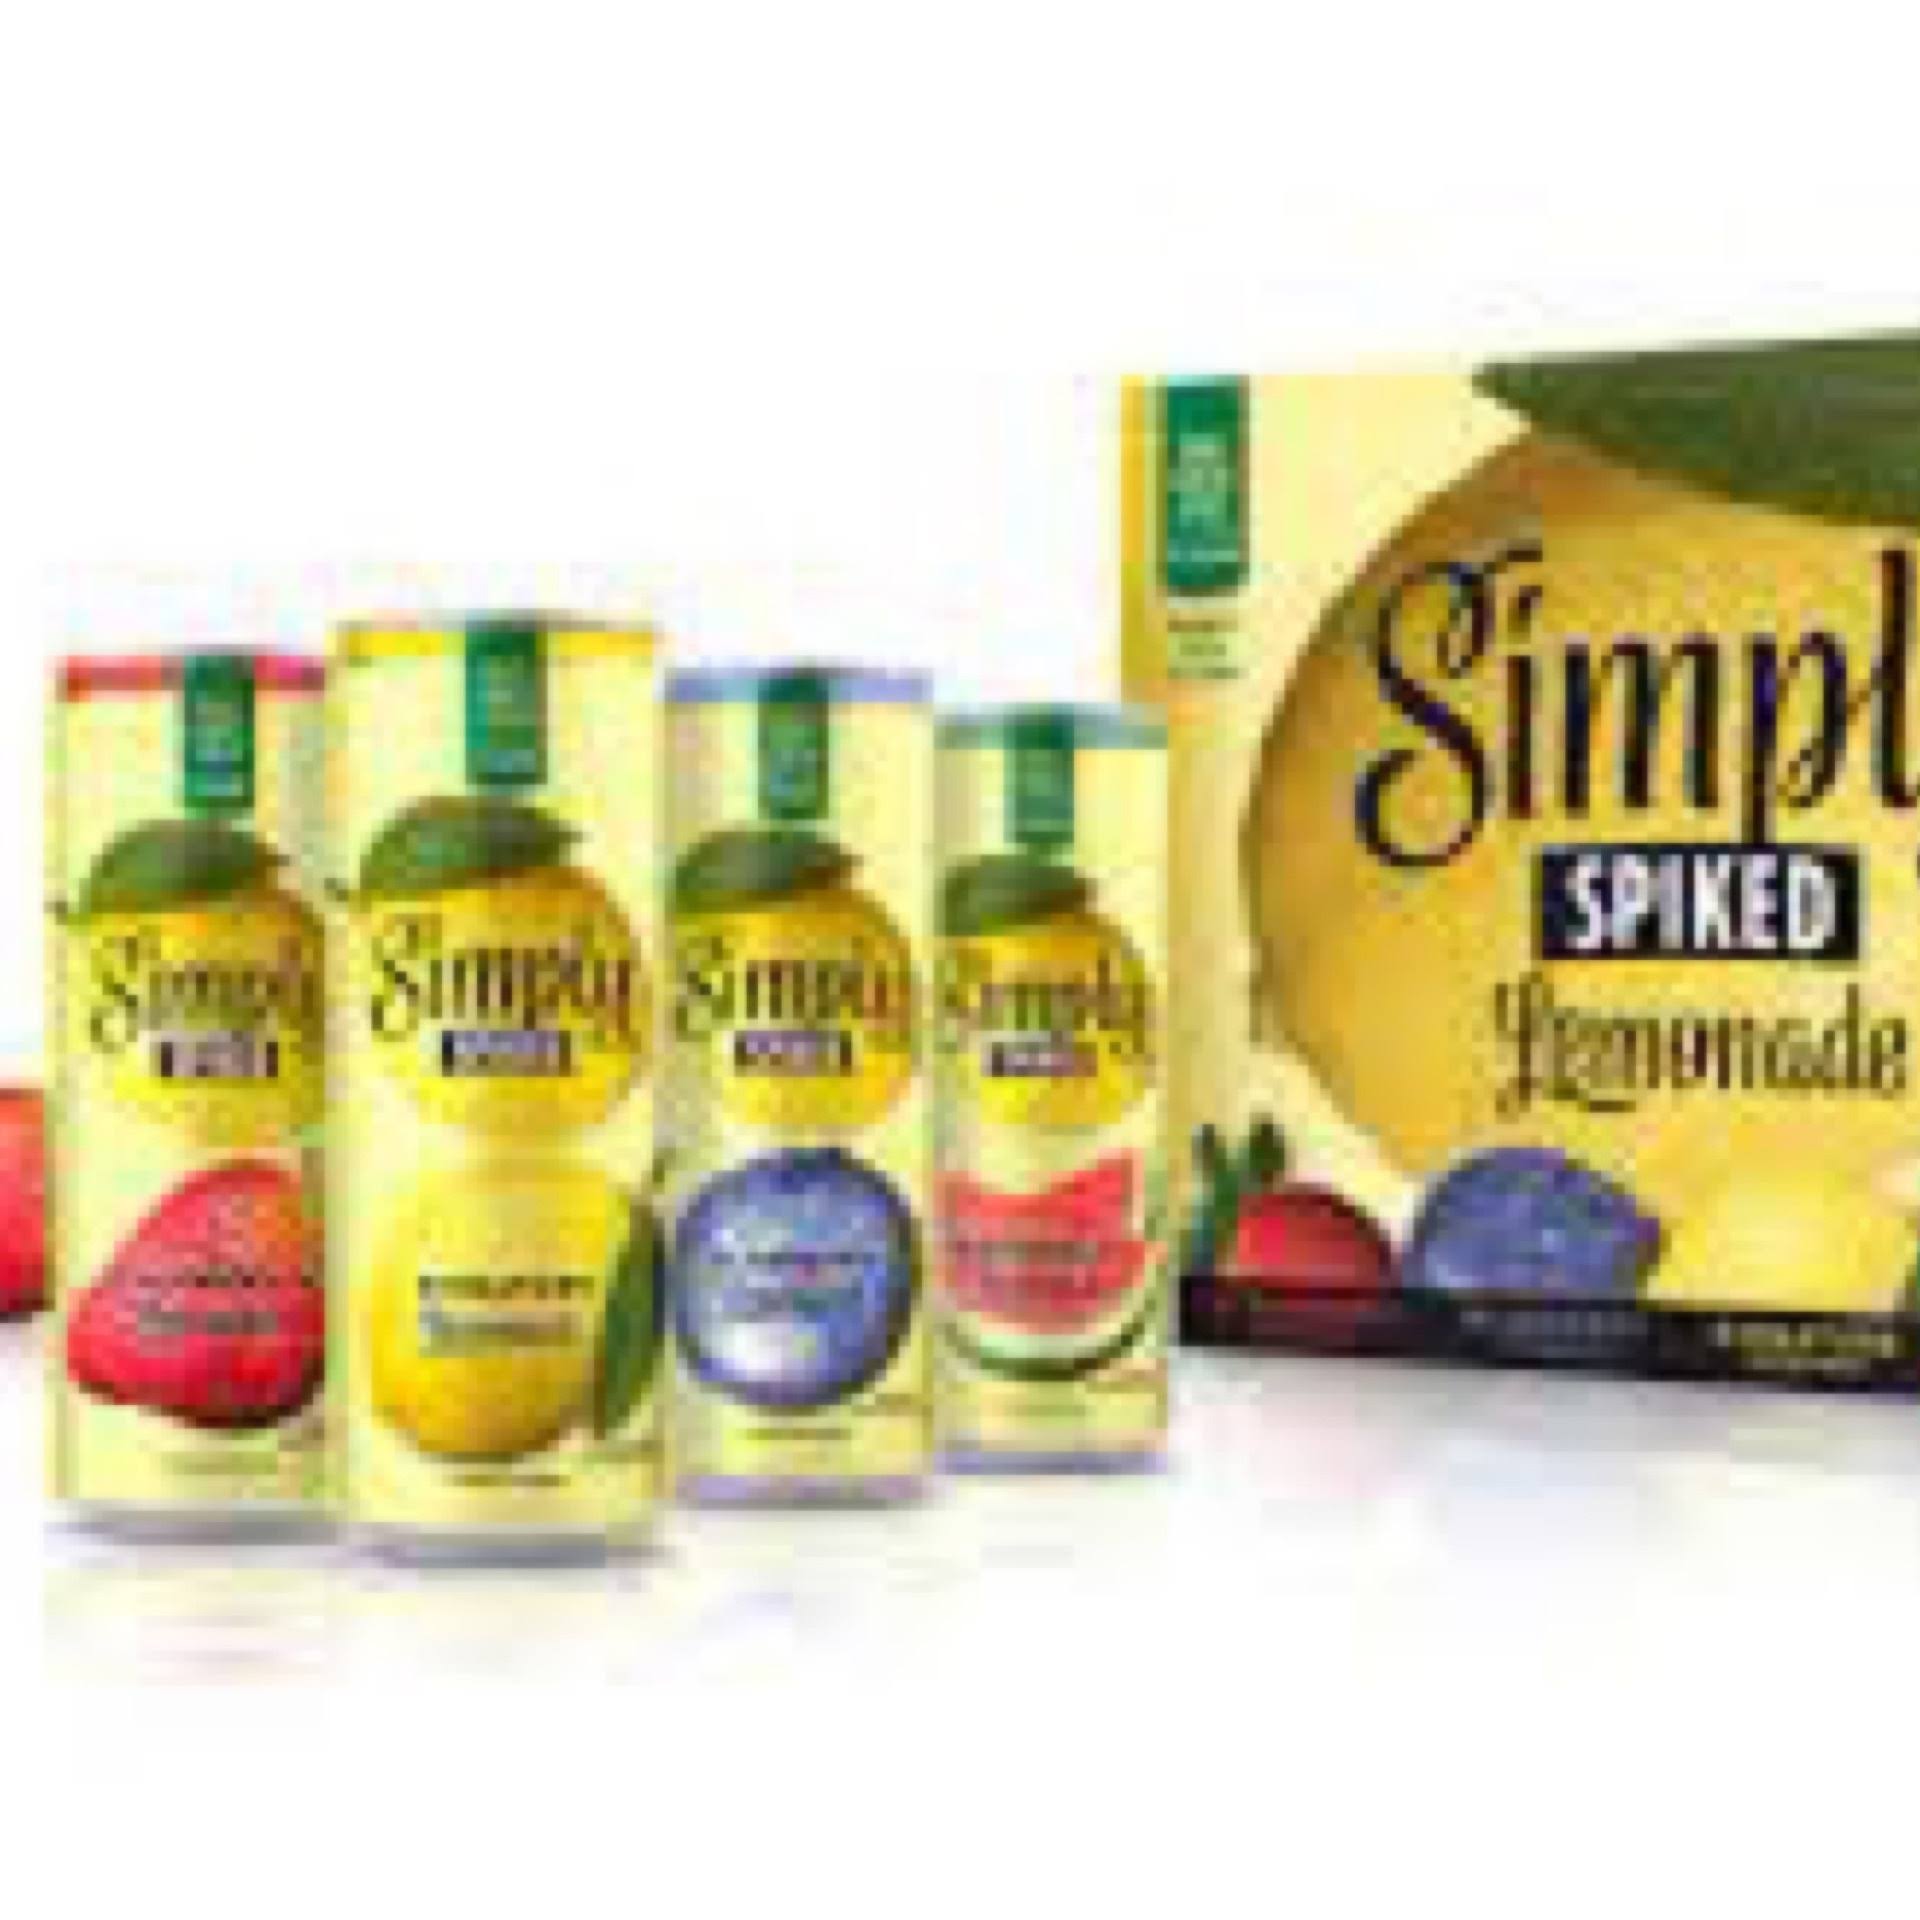 Simply Spiked Lemonade Variety Pack 12oz